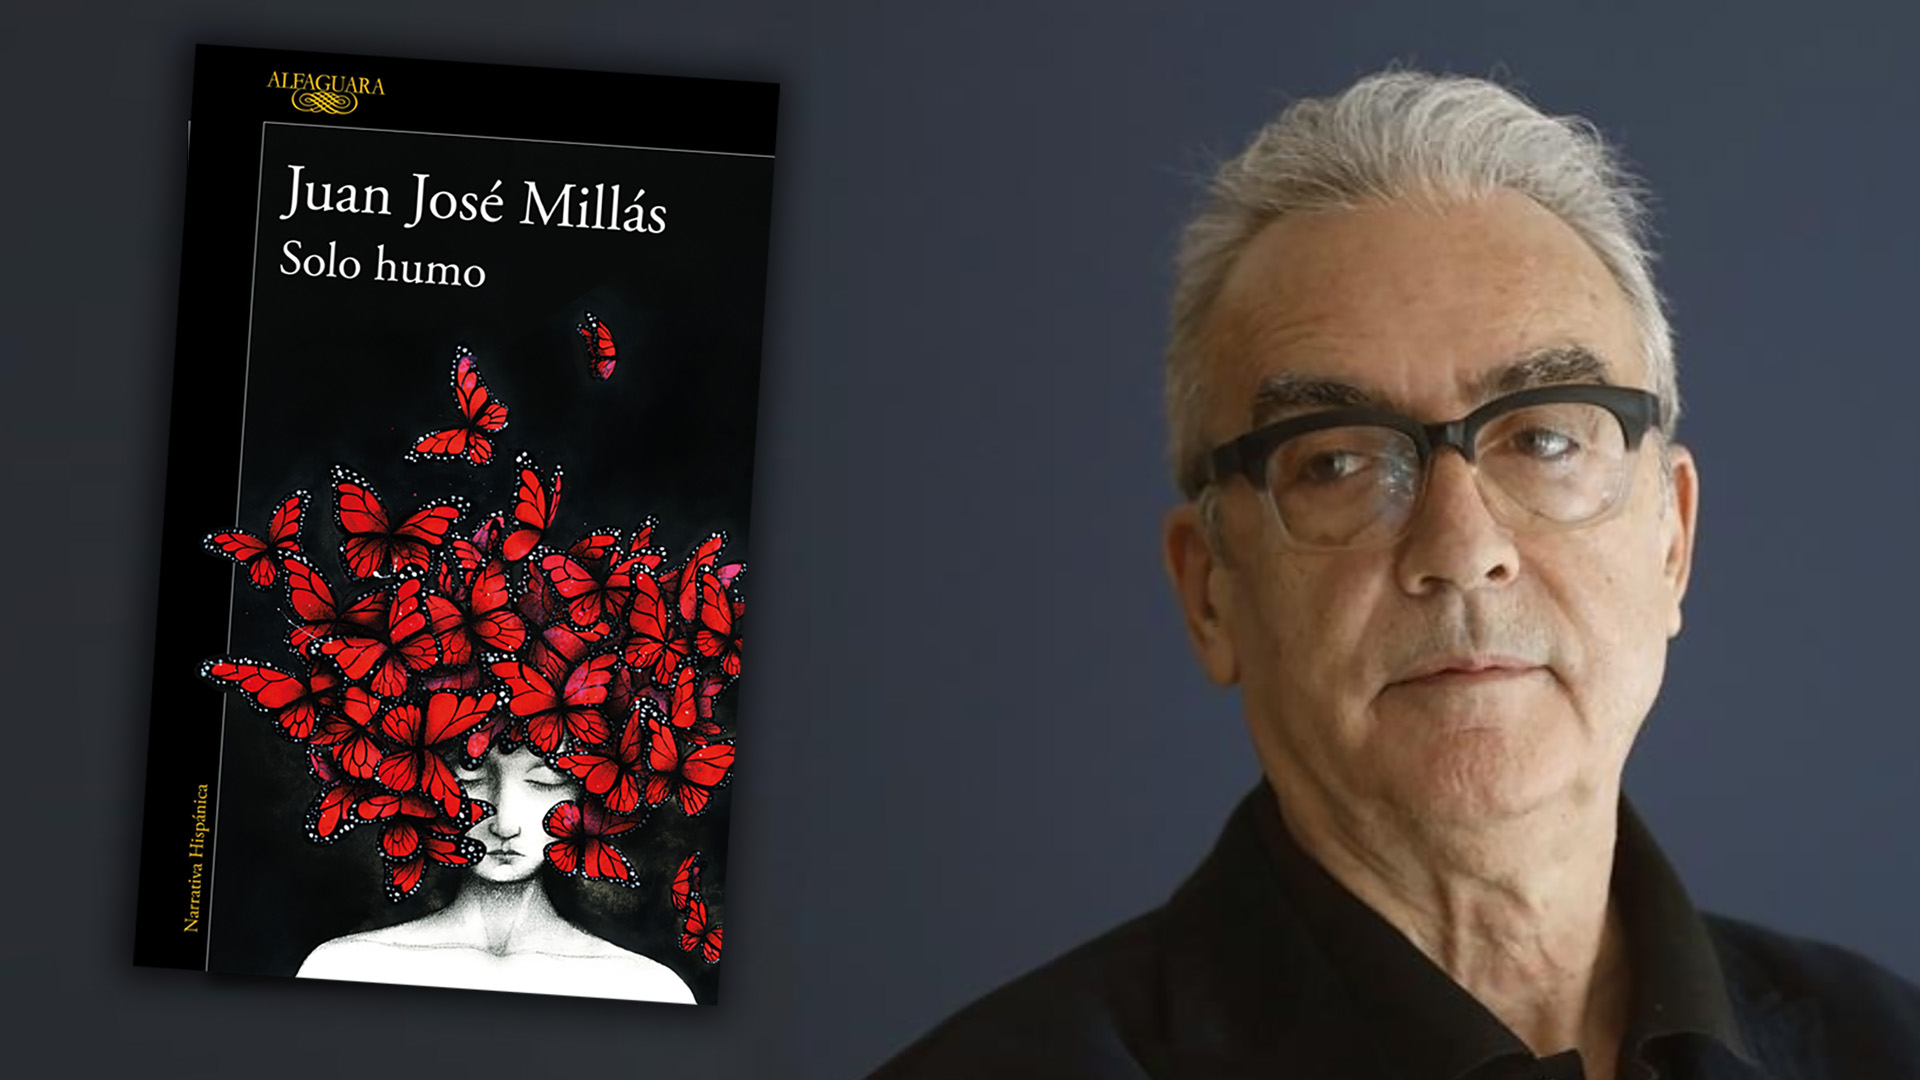 Juan José Millás: “Quería describir el encuentro con la lectura, que me parece una experiencia tan alucinante como brutal ”